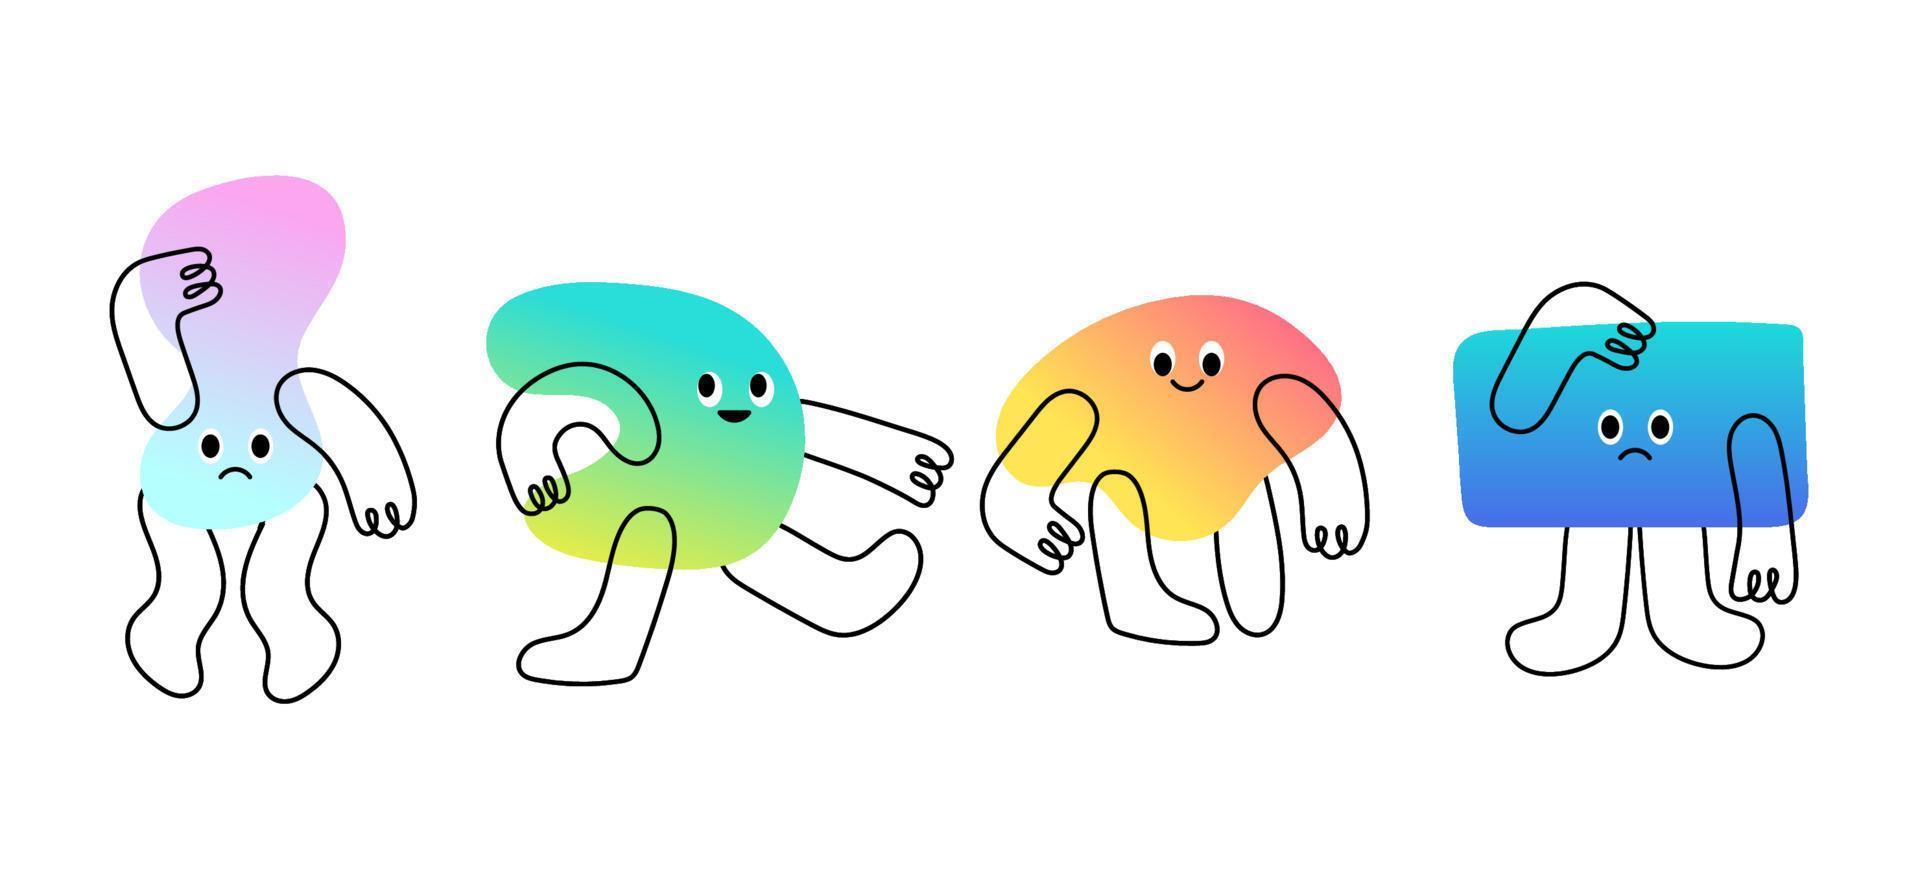 pacote de vários personagens brilhantes no estilo de doodle com gradiente. conjunto colorido de criaturas abstratas isoladas com braços e pernas. ilustrações para crianças. design plano de vetor